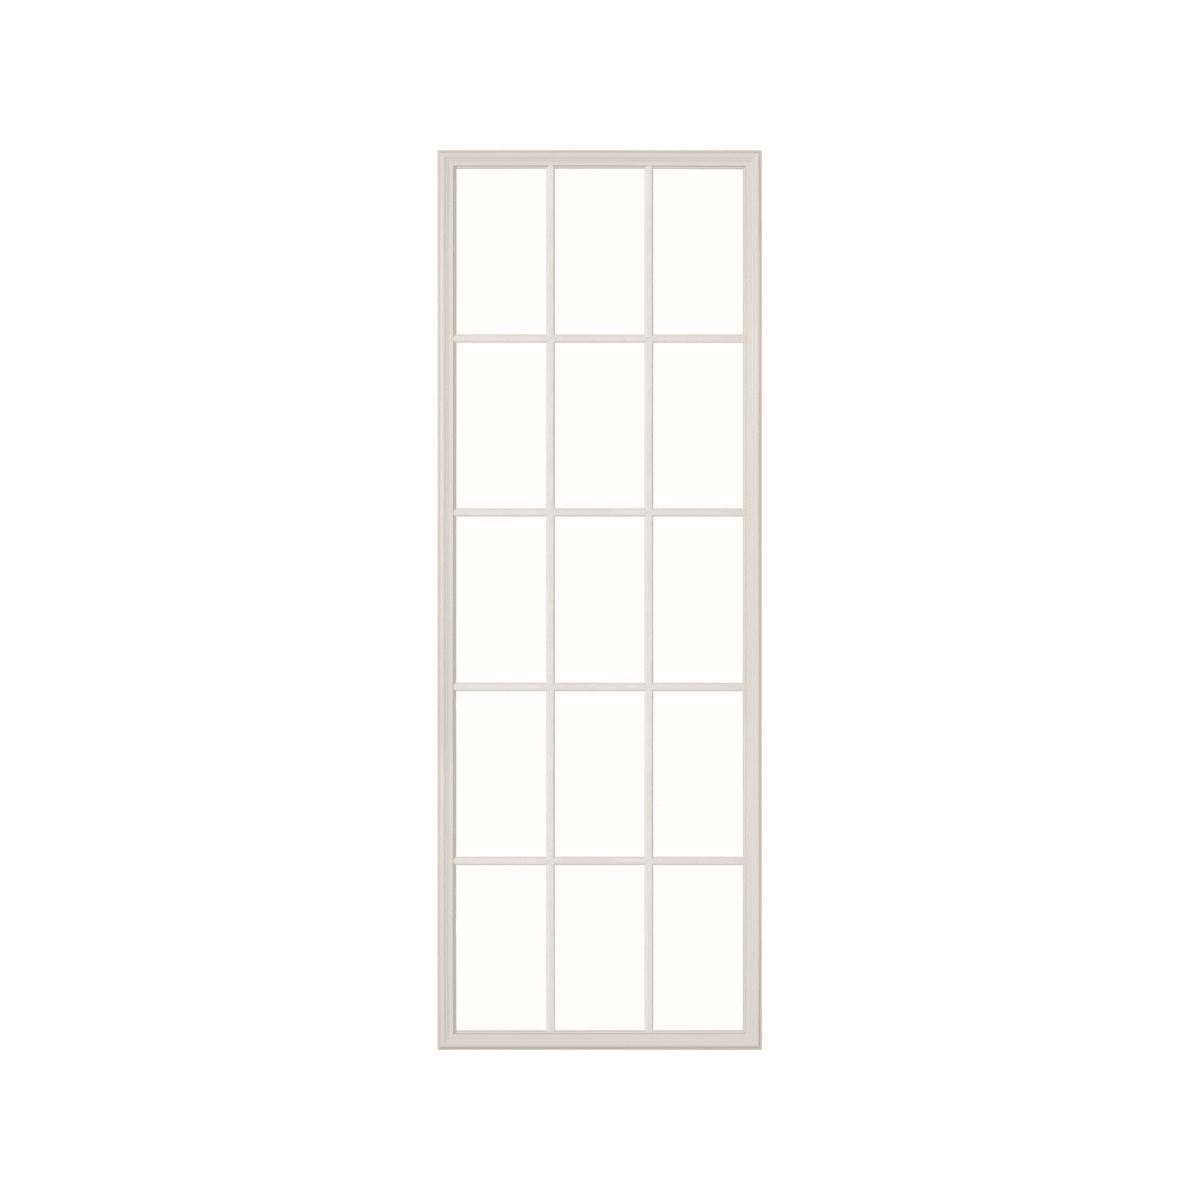 9 Panel Lite 9.5 x 20.5 Frame Kit